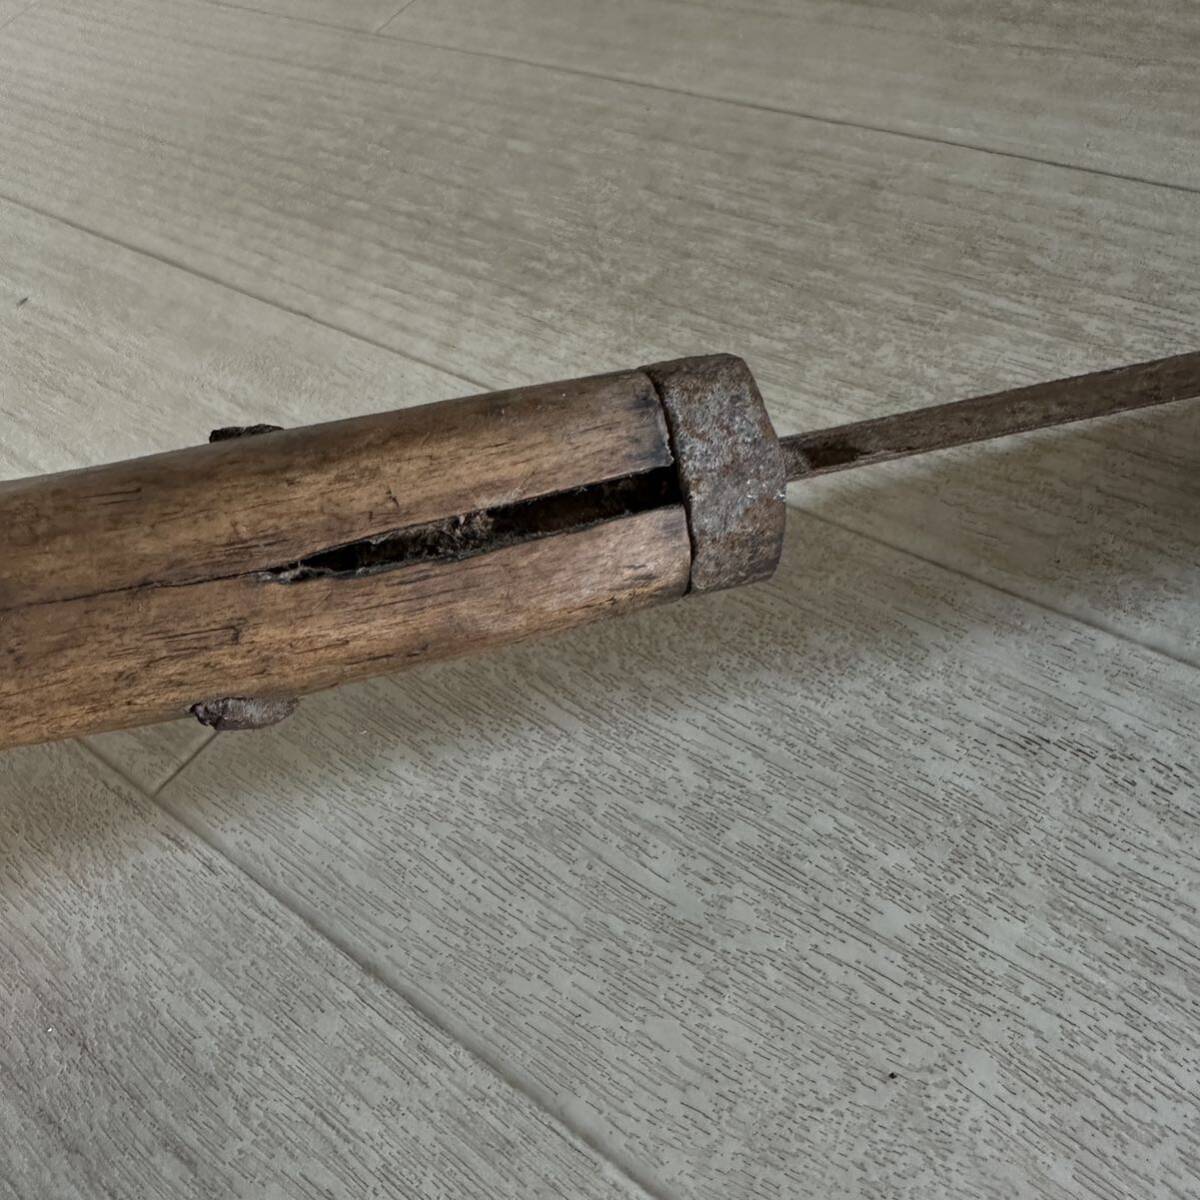  старый топорик топорик nata плотничный инструмент старый инструмент . индустрия режущий инструмент дрова десятая часть 